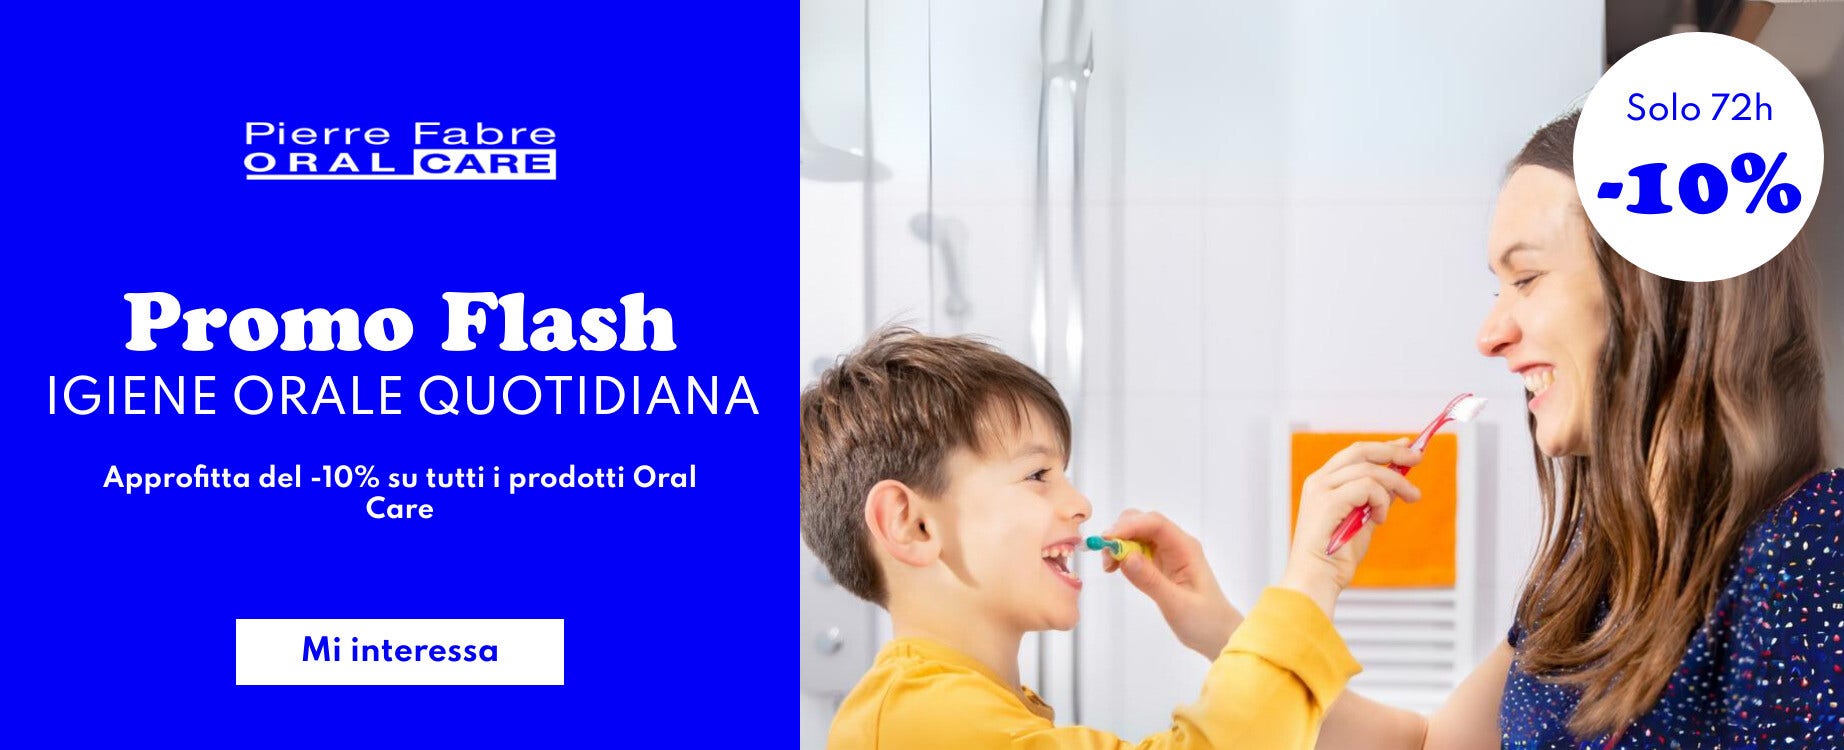 Promo flash Oral Care: approfitta del -10% su tutti i prodotti!